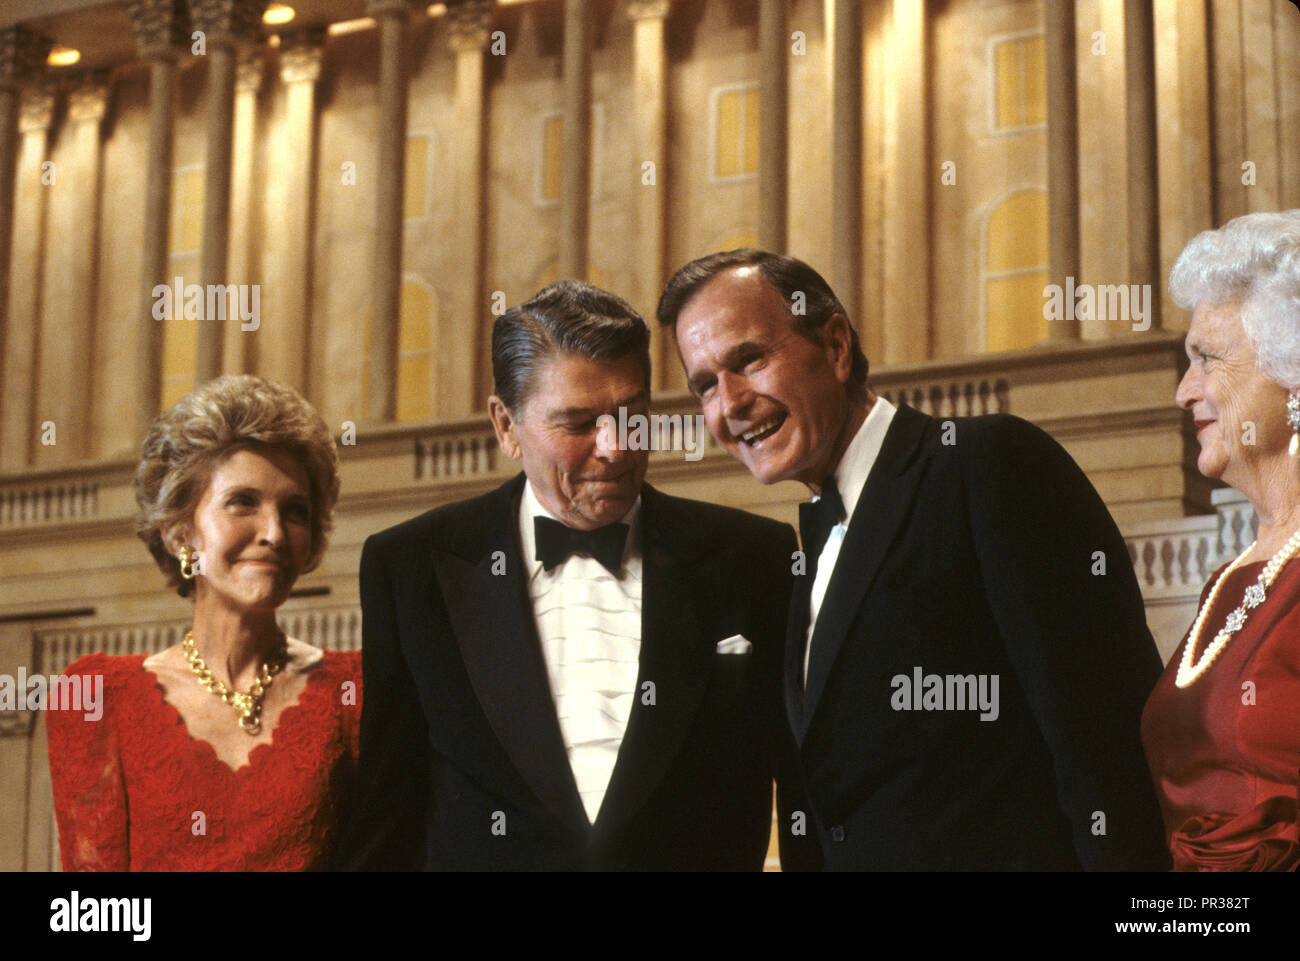 Il Presidente Ronald Reagan e la First Lady Nancy Reagan ad una cena a Washington dove il Presidente Reagan approva il Vice Presidente George HW Bush per il presidente. Fotografia di Dennis Brack bb24 Foto Stock